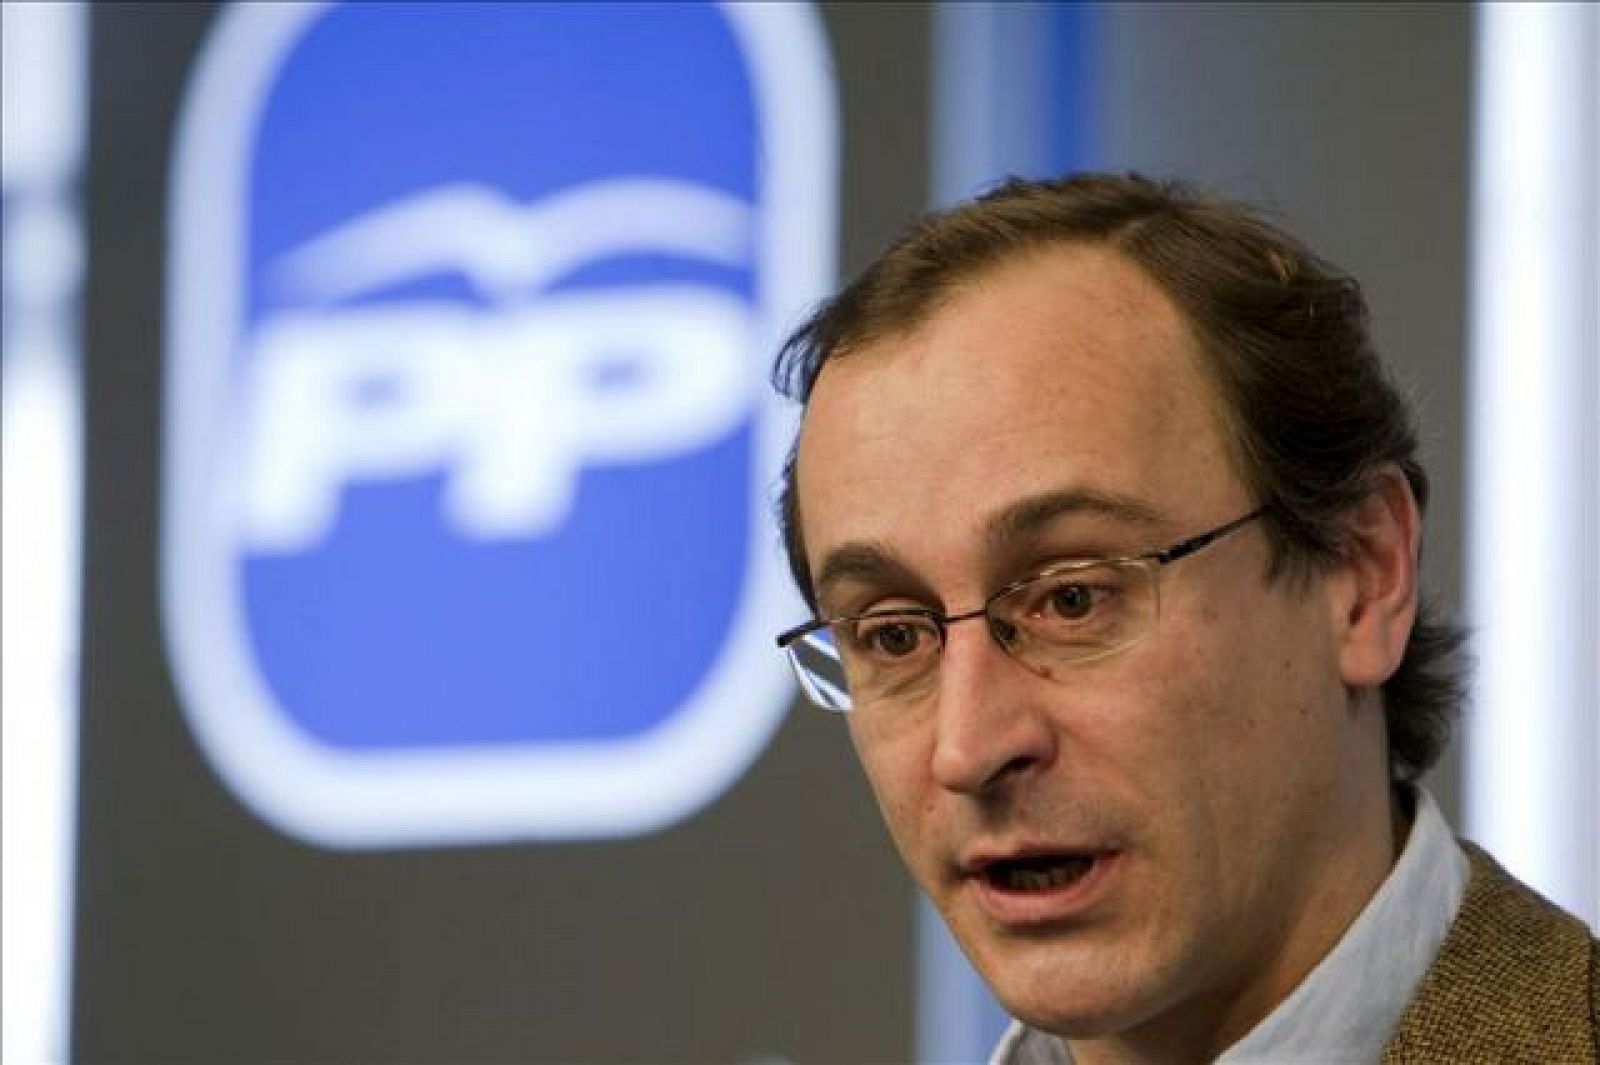 El presidente del PP en Álava, Antonio Alonso, será el nuevo portavoz de los 'populares' en el Congreso de los Diputados.